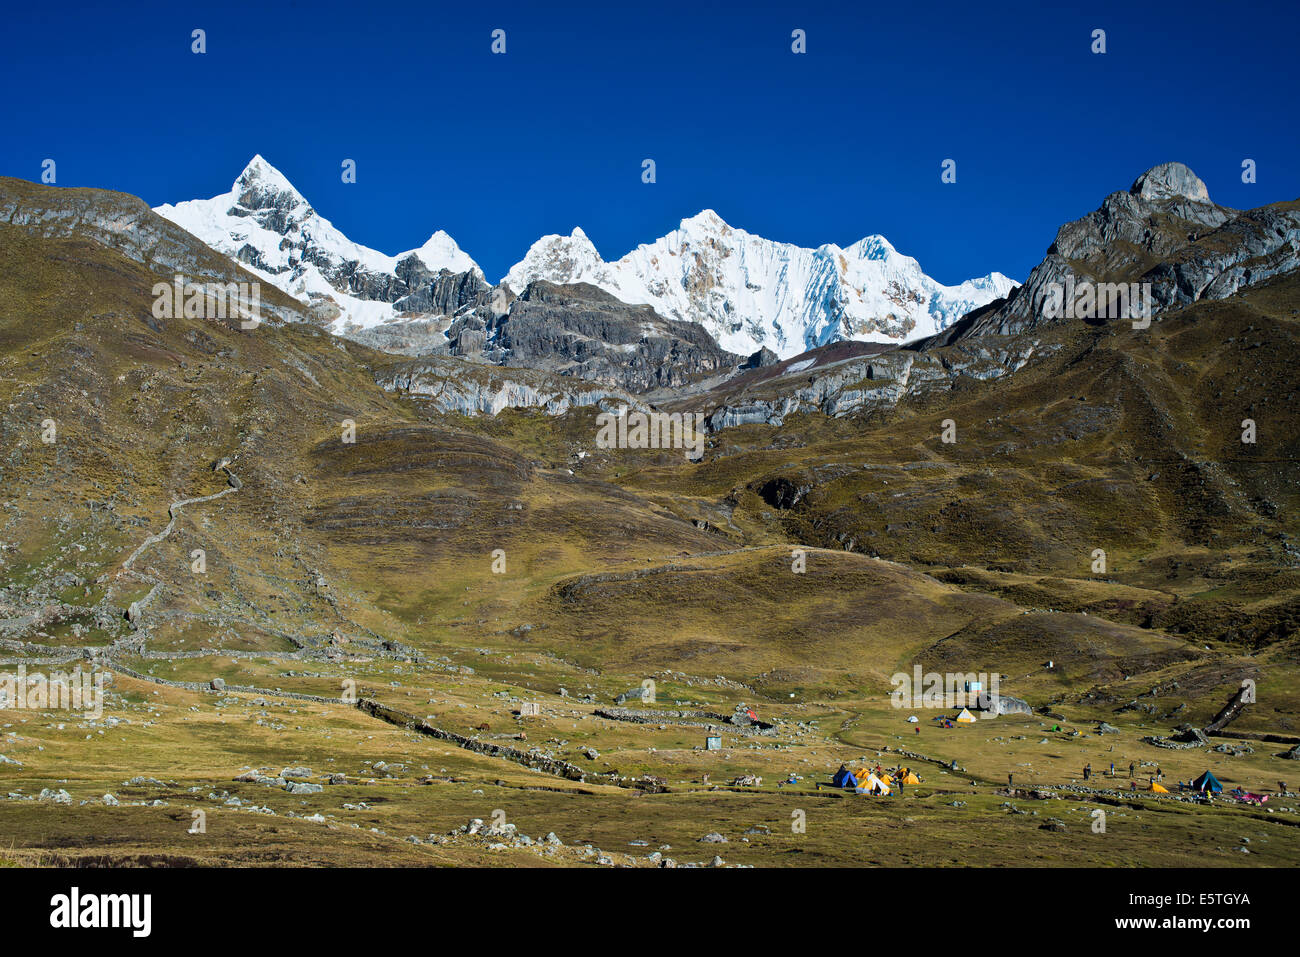 Zeltlager auf der Rückseite der schneebedeckten Mt Trapecio und Mt Nevados Jurau, Cordillera Huayhuash Gebirge Nord-Peru Stockfoto